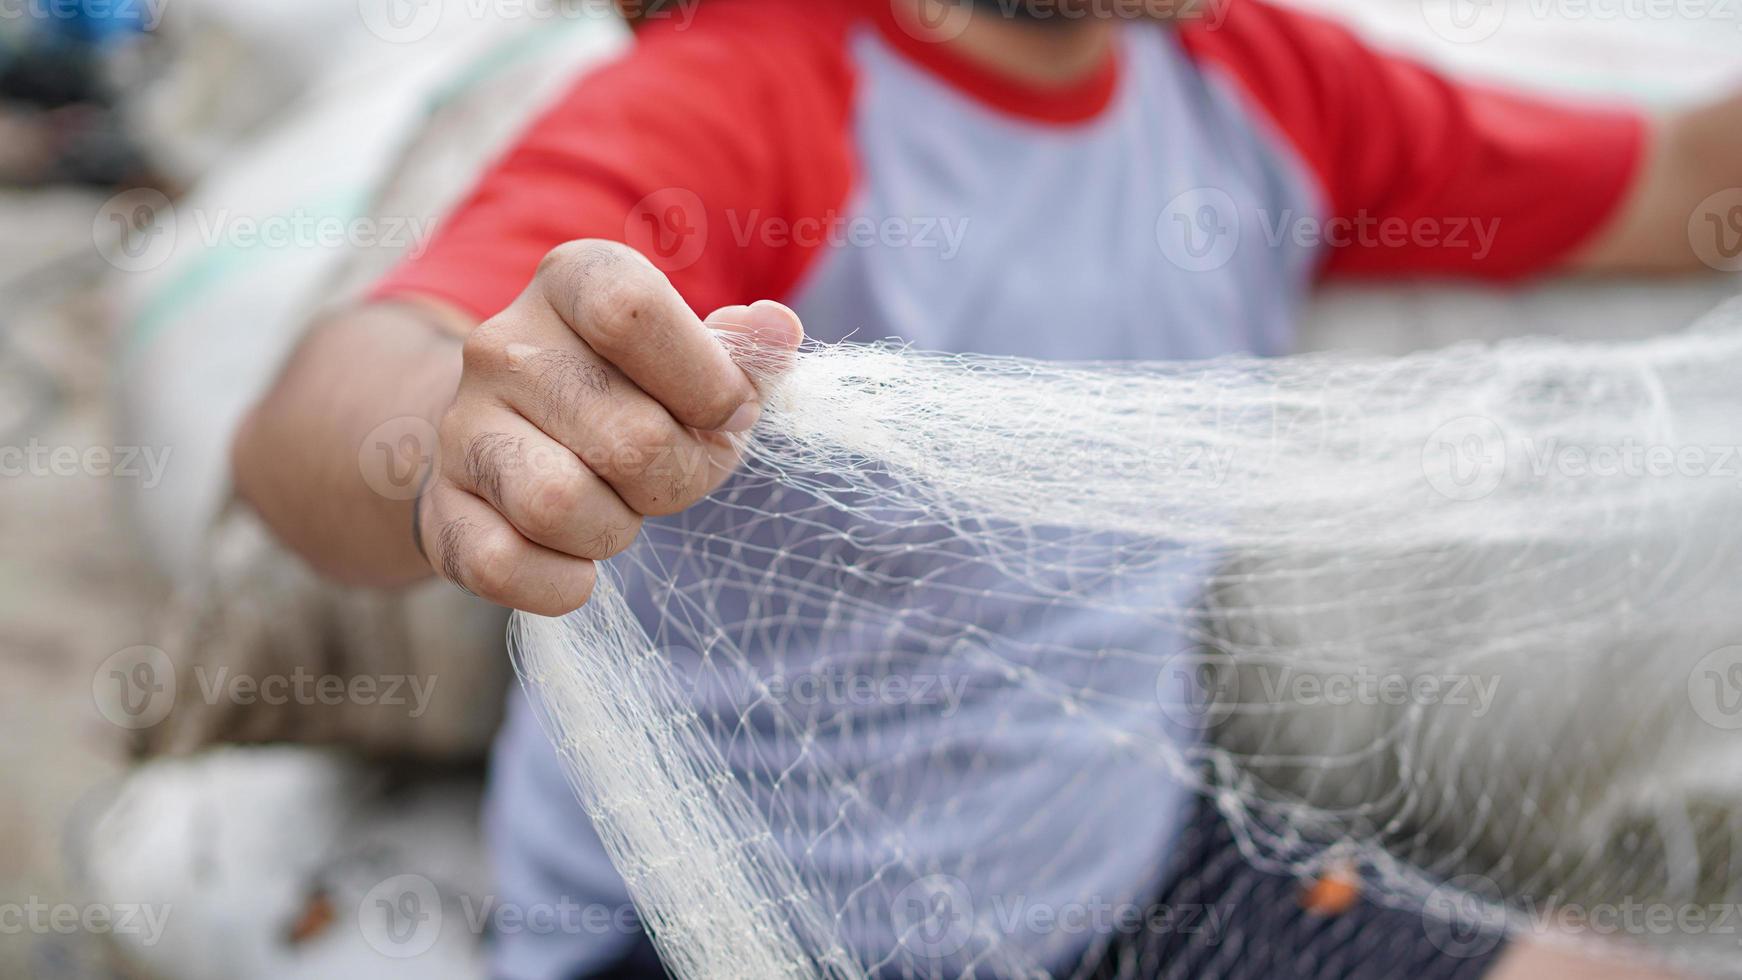 retrato de um jovem pescador masculino preparando uma rede de pesca na praia foto